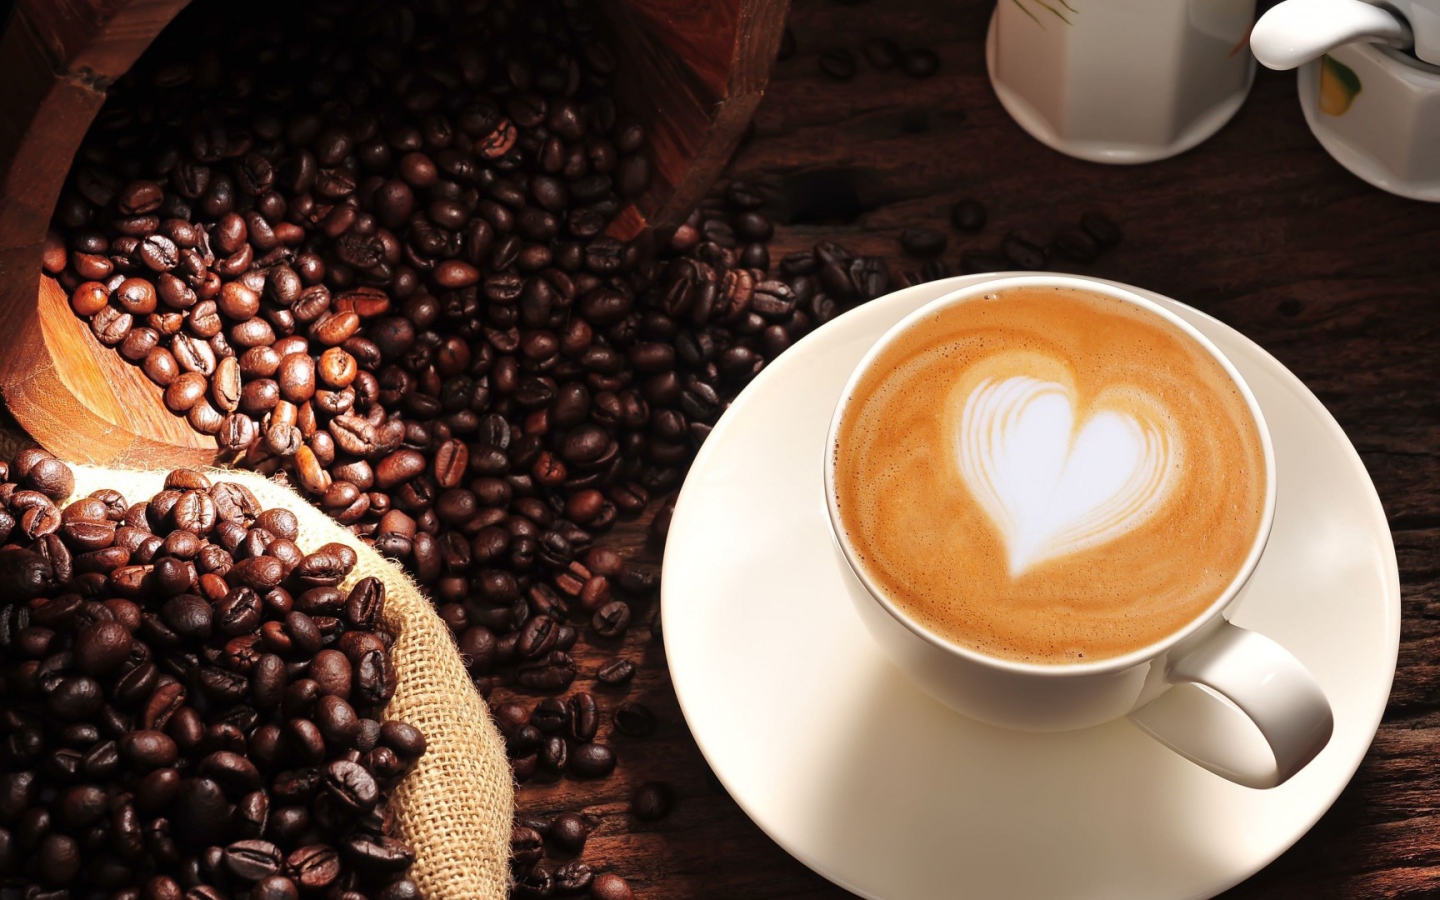 Чашка кофе с сердцем